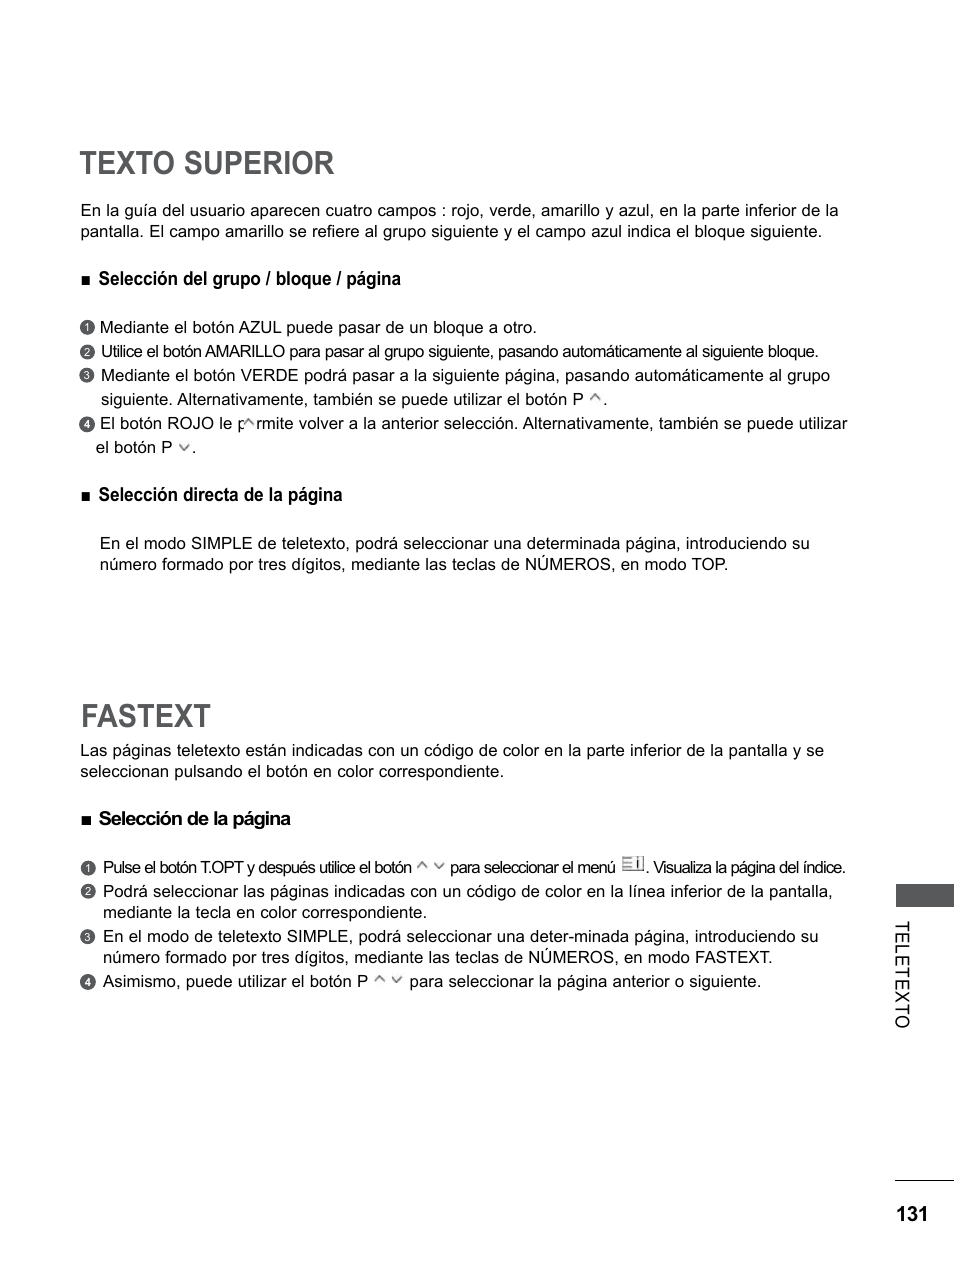 Texto superior, Fastext | LG 55LE5300 Manual del usuario | Página 179 / 206